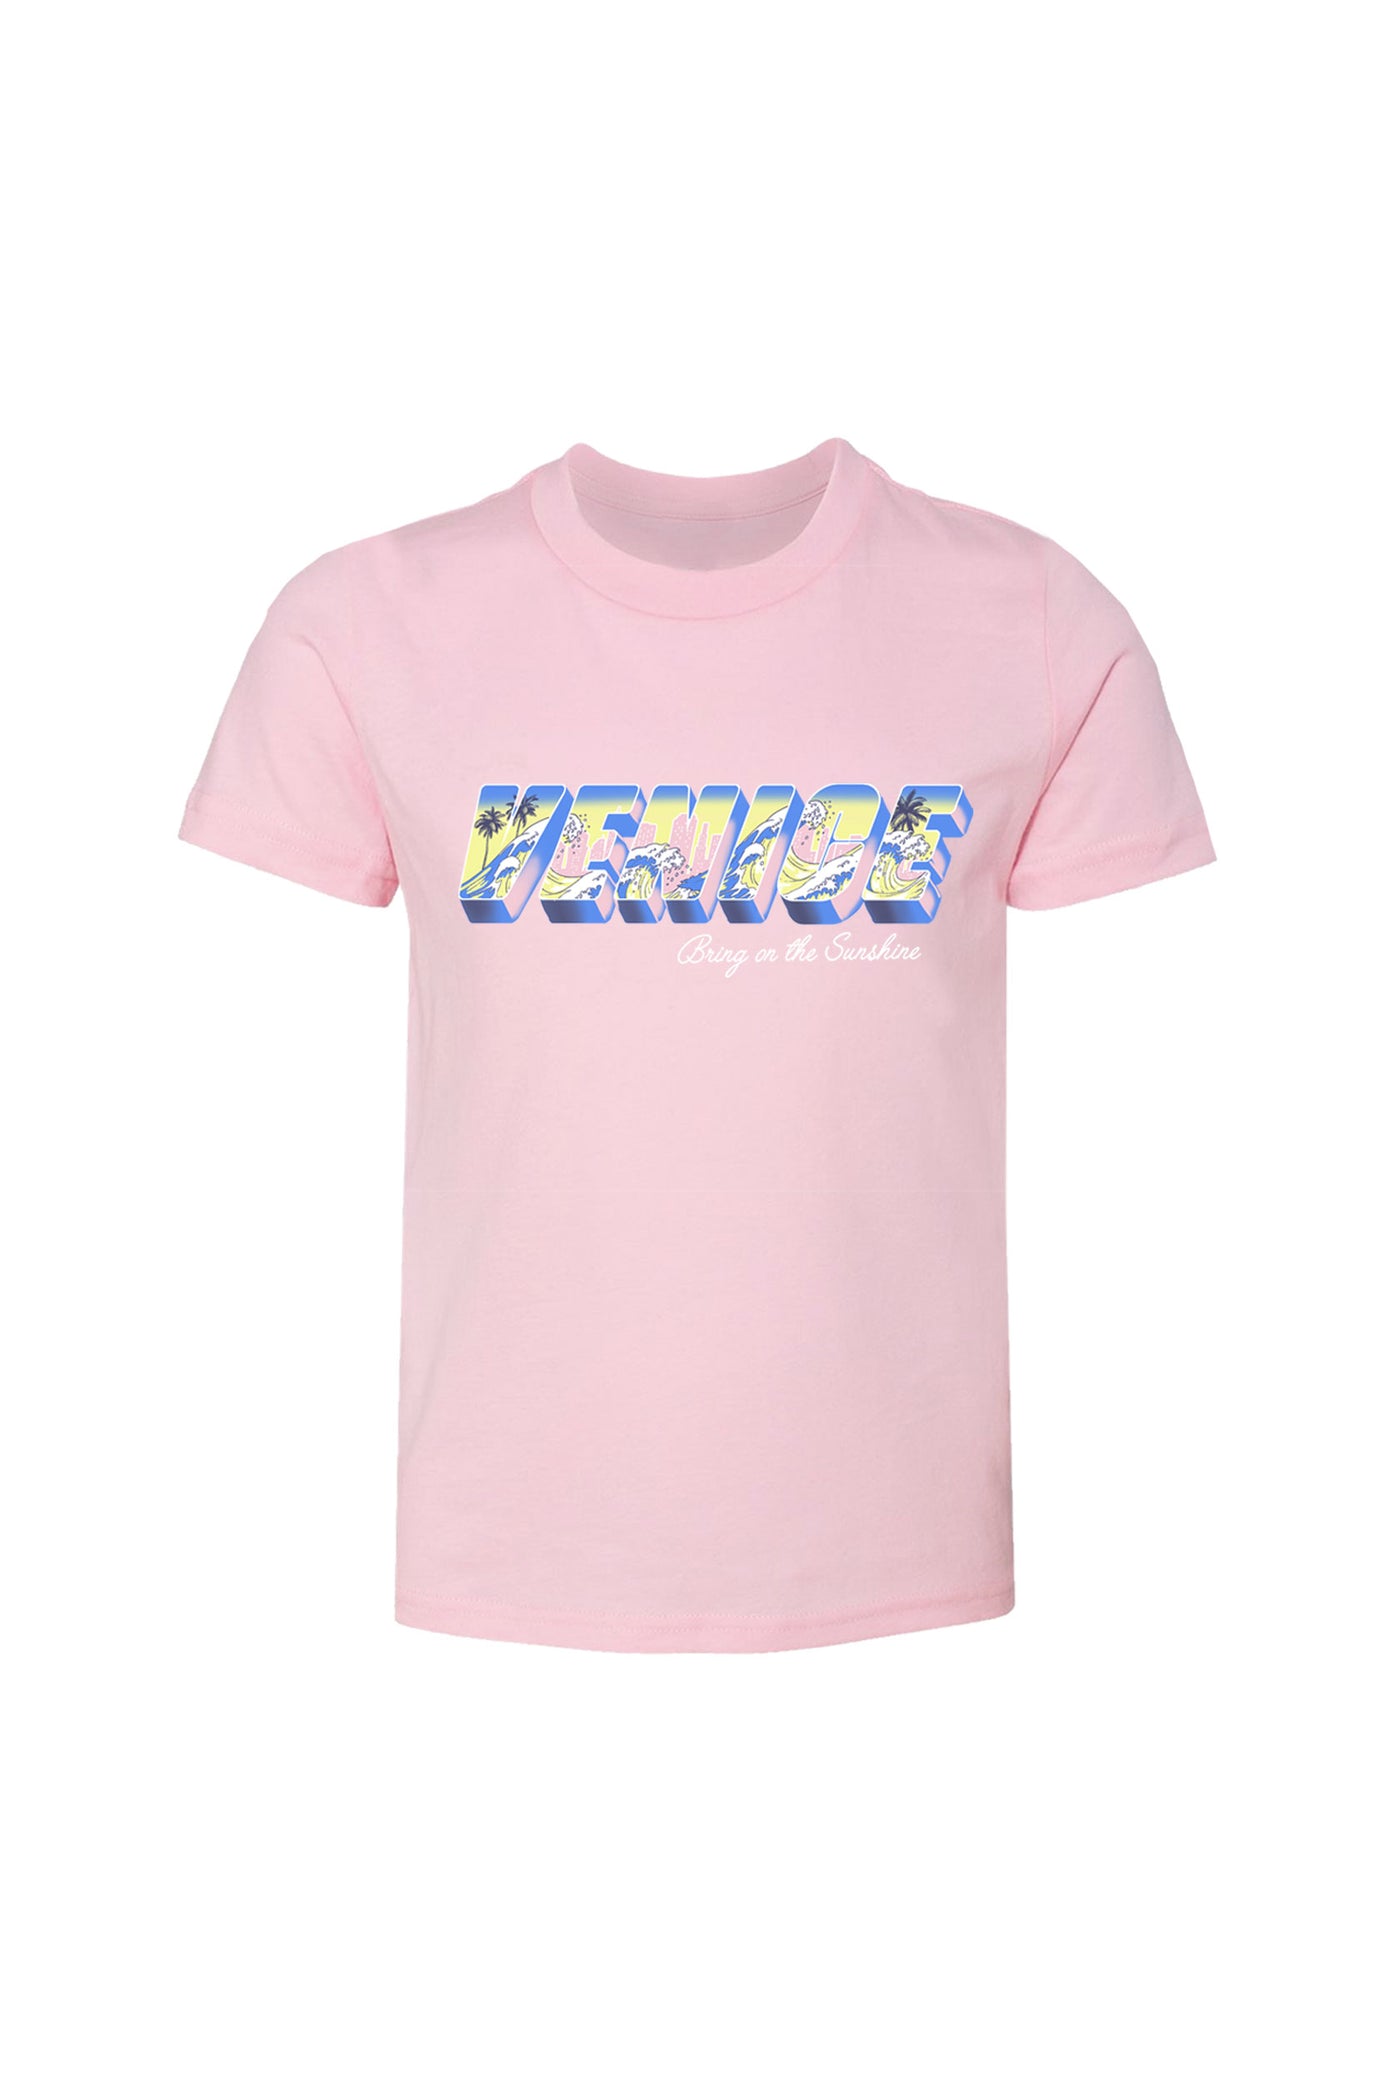 Kids' Pink Venice T-shirt-Unisex